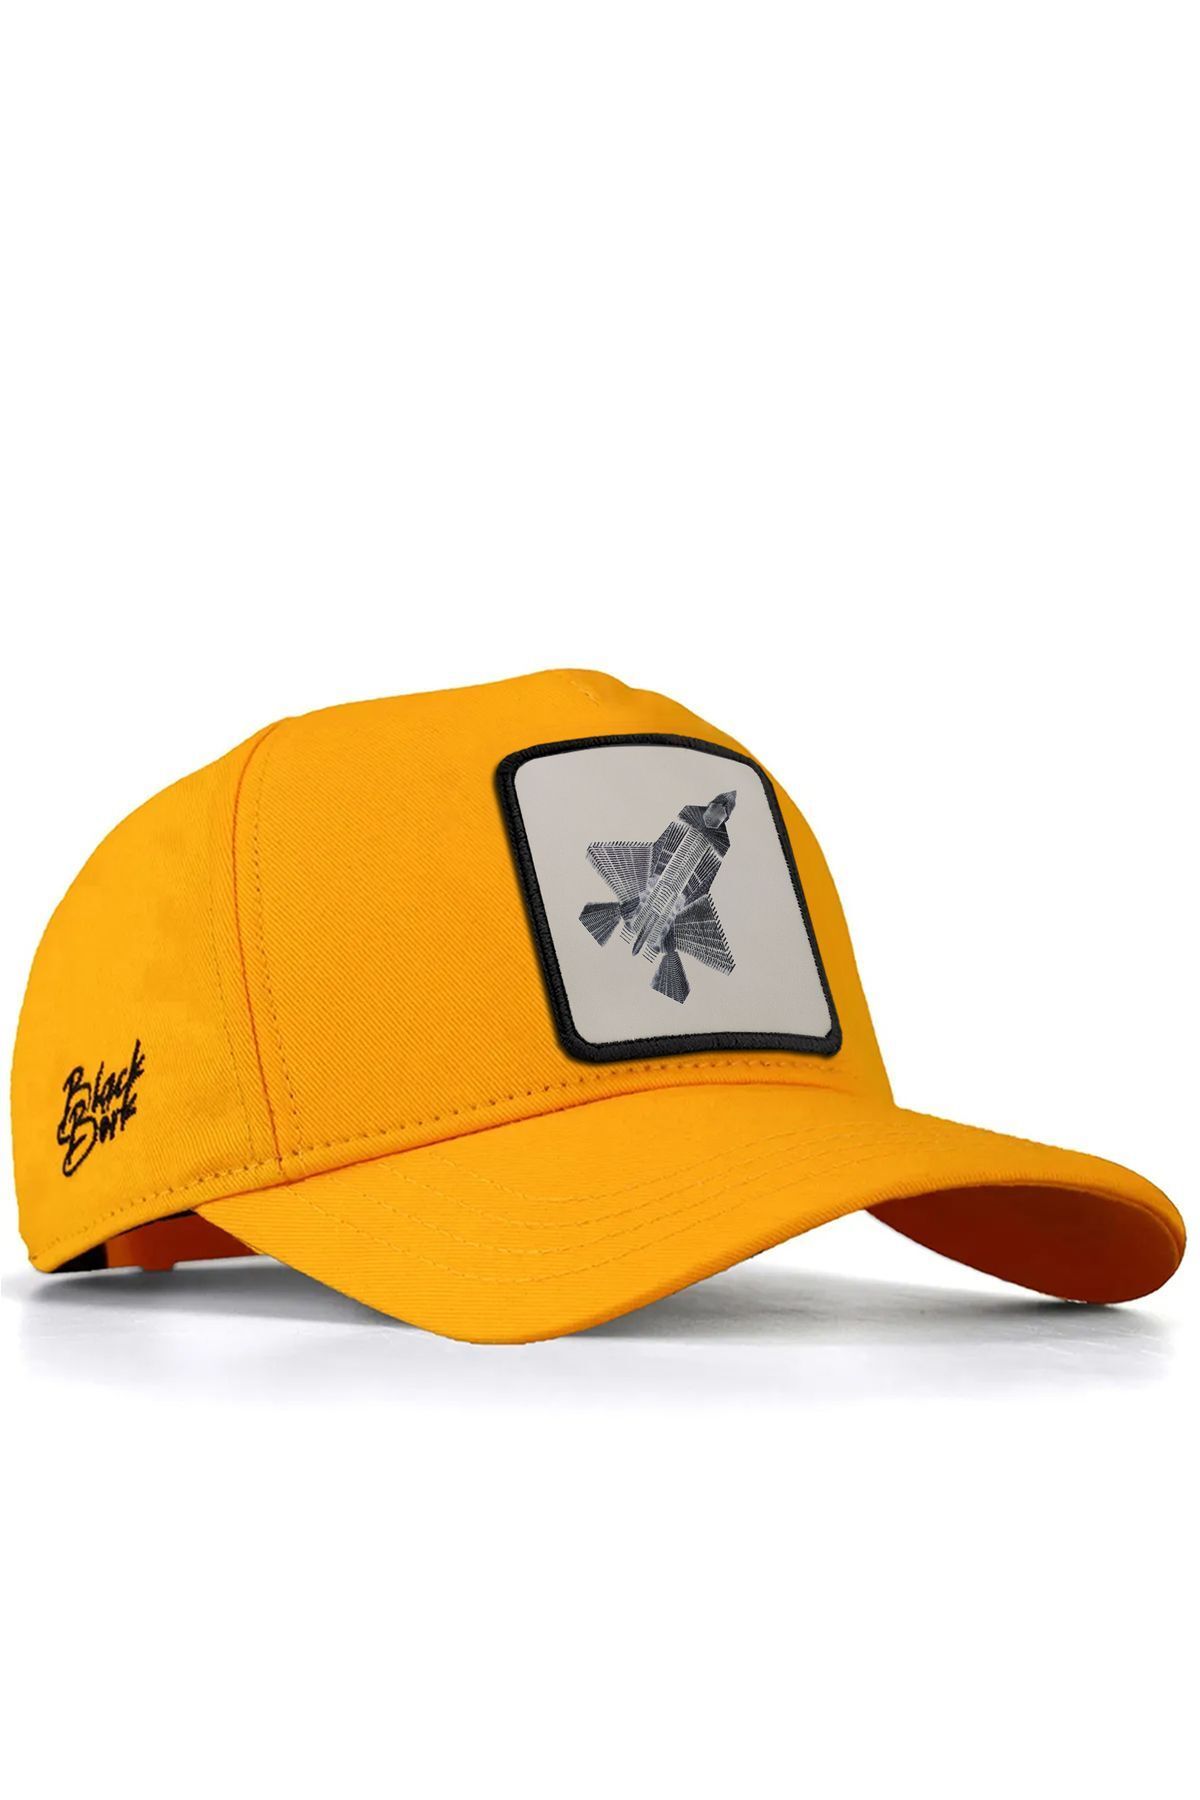 BlackBörk V1 Baseball Kazanan - 2 Kaan Lisanlı Sarı Şapka